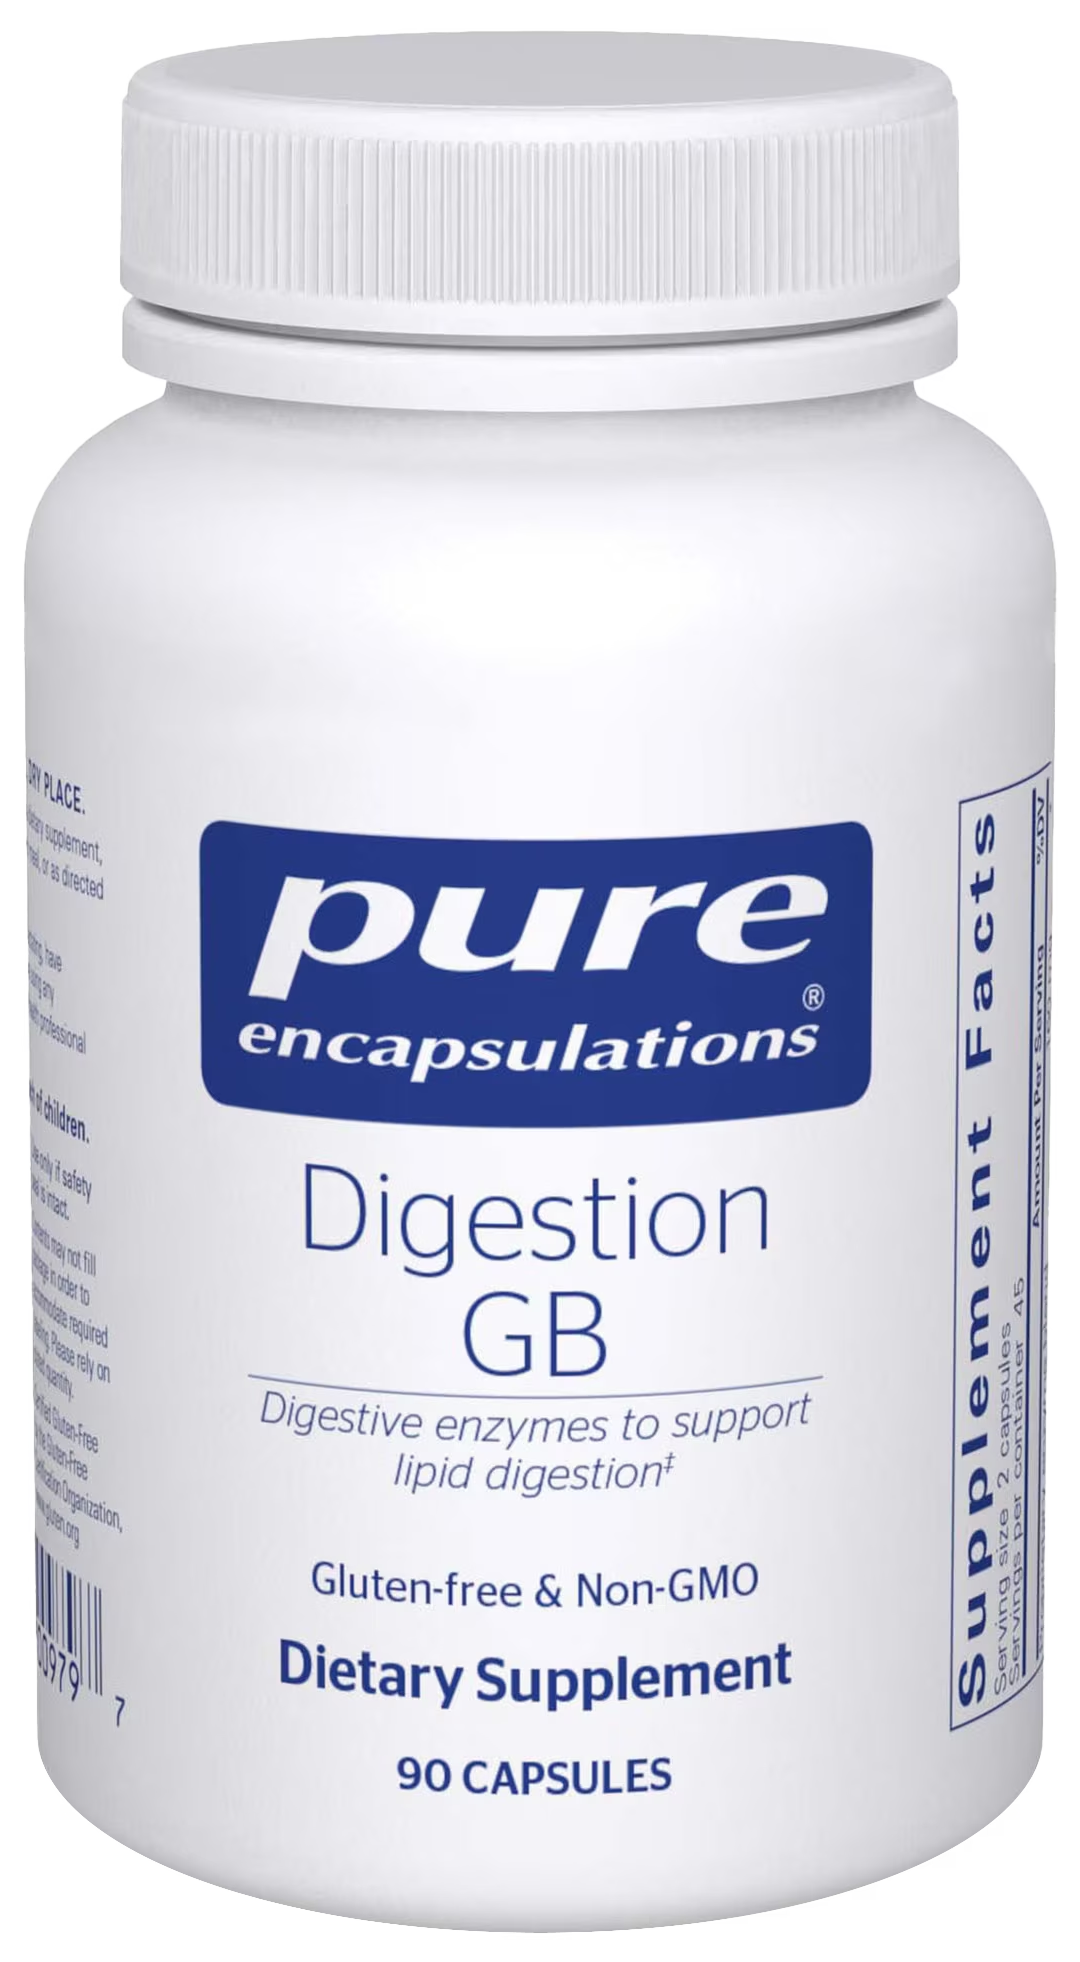 Digestion GB